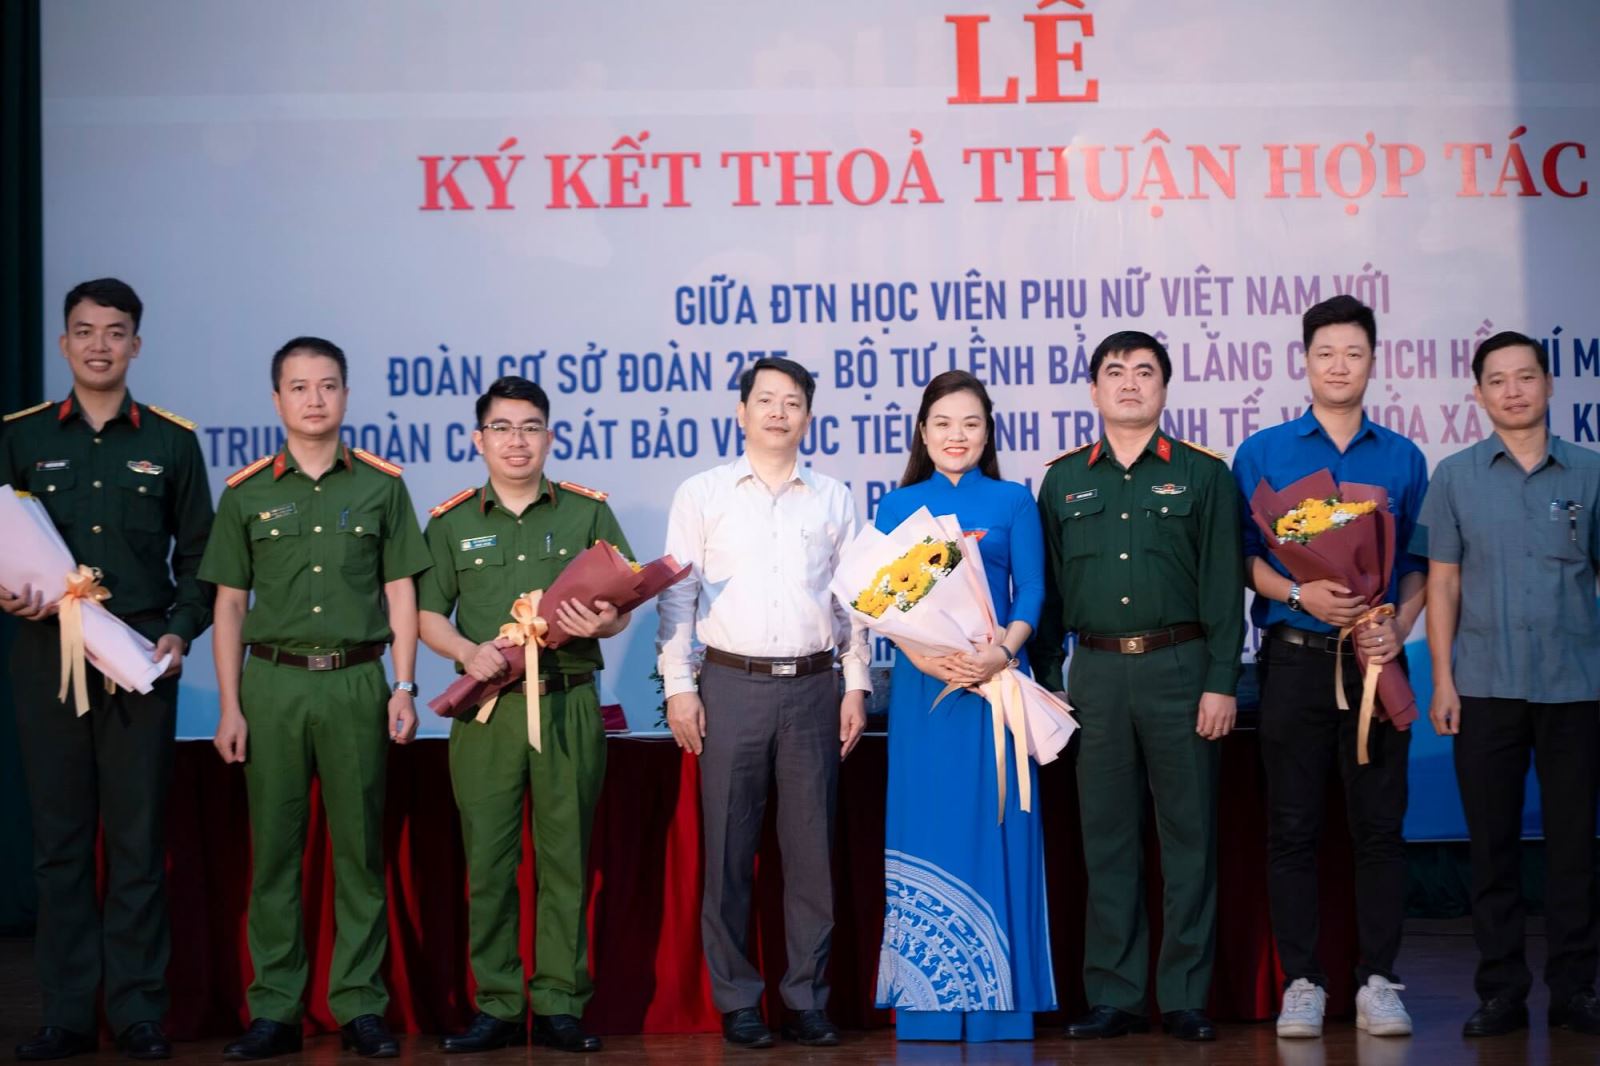 Học viện Phụ nữ Việt Nam phối hợp tổ chức các hoạt động đoàn thanh niên, sinh viên